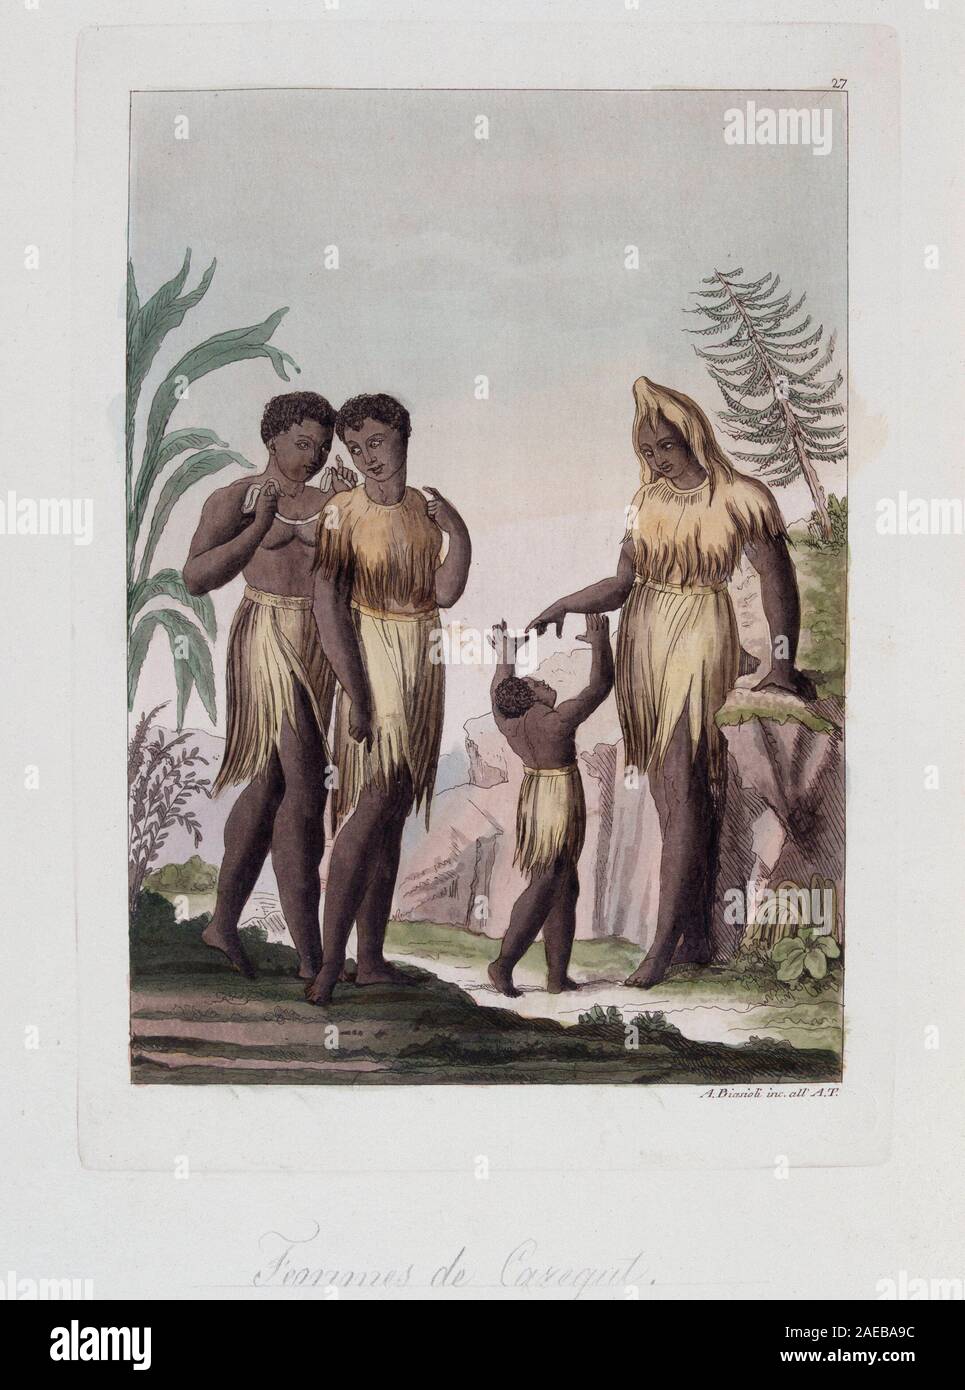 Femmes de Cazegut en Senegambie - in 'Le costume ancien et moderne' par Ferrario, ed Milan, 1819-20 ©/ Stock Photo